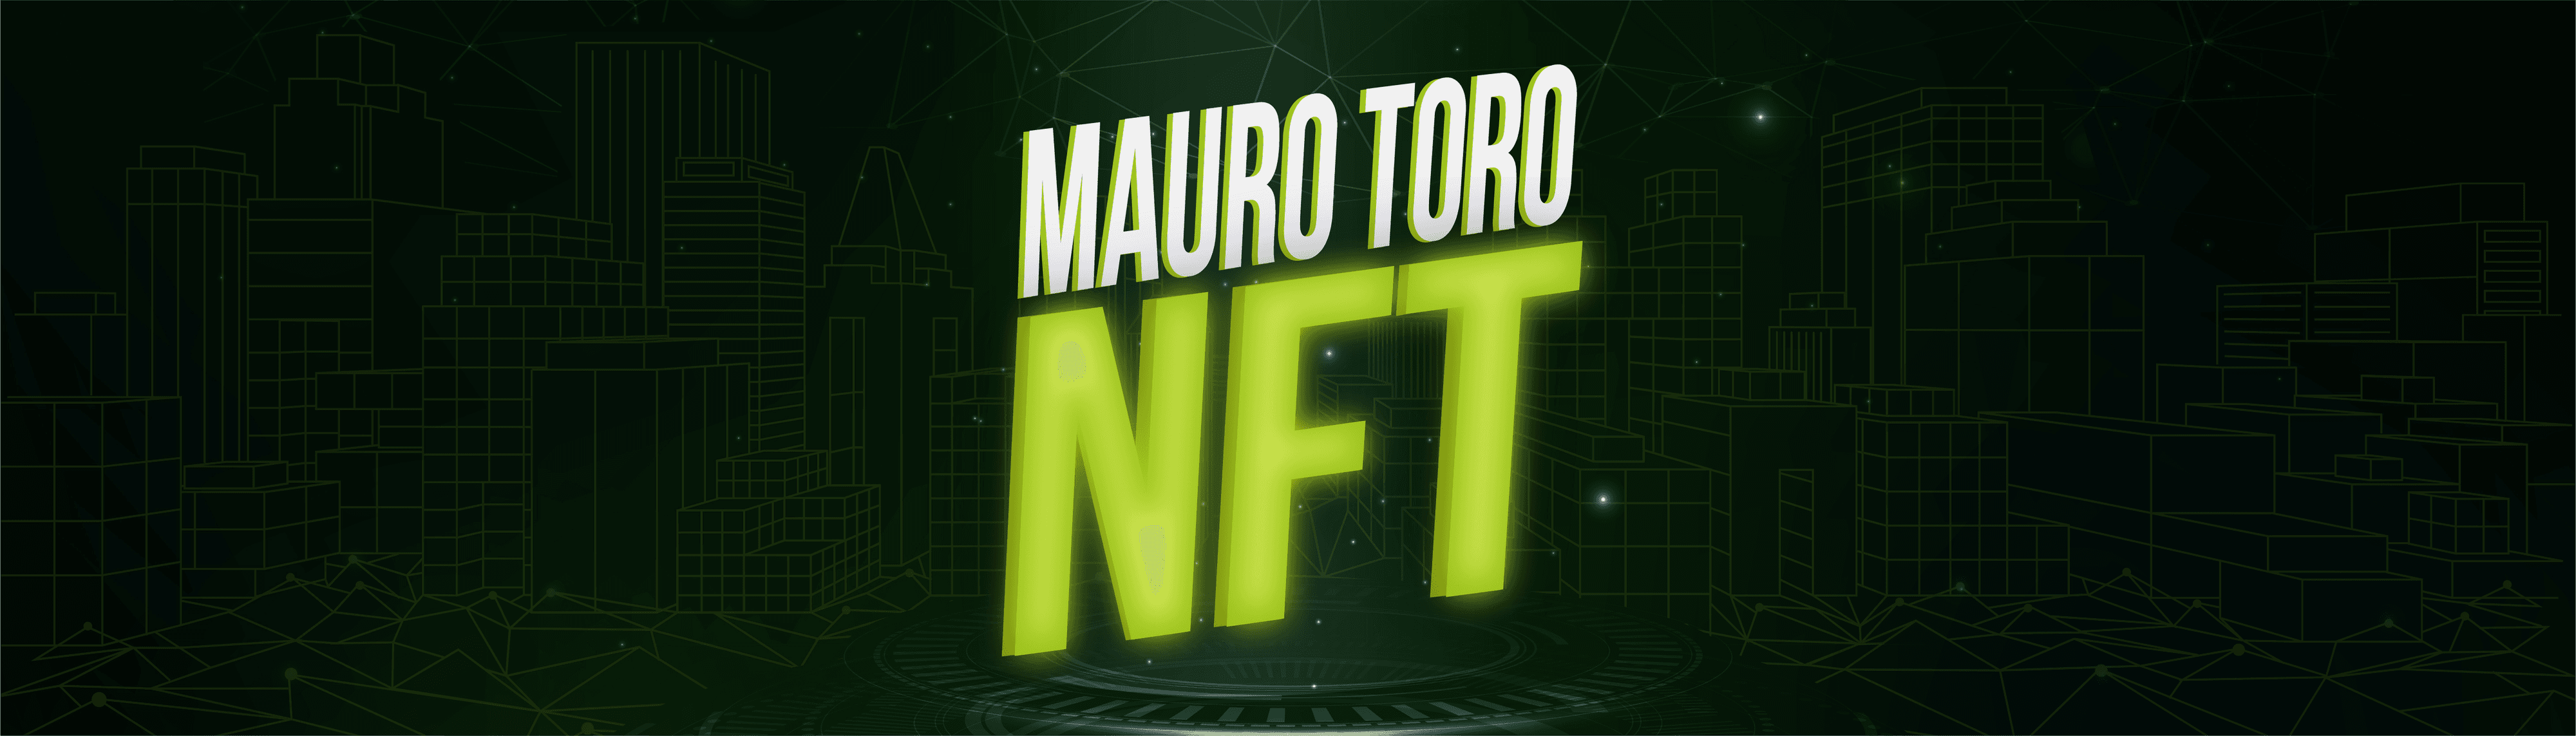 MauroToro105 banner